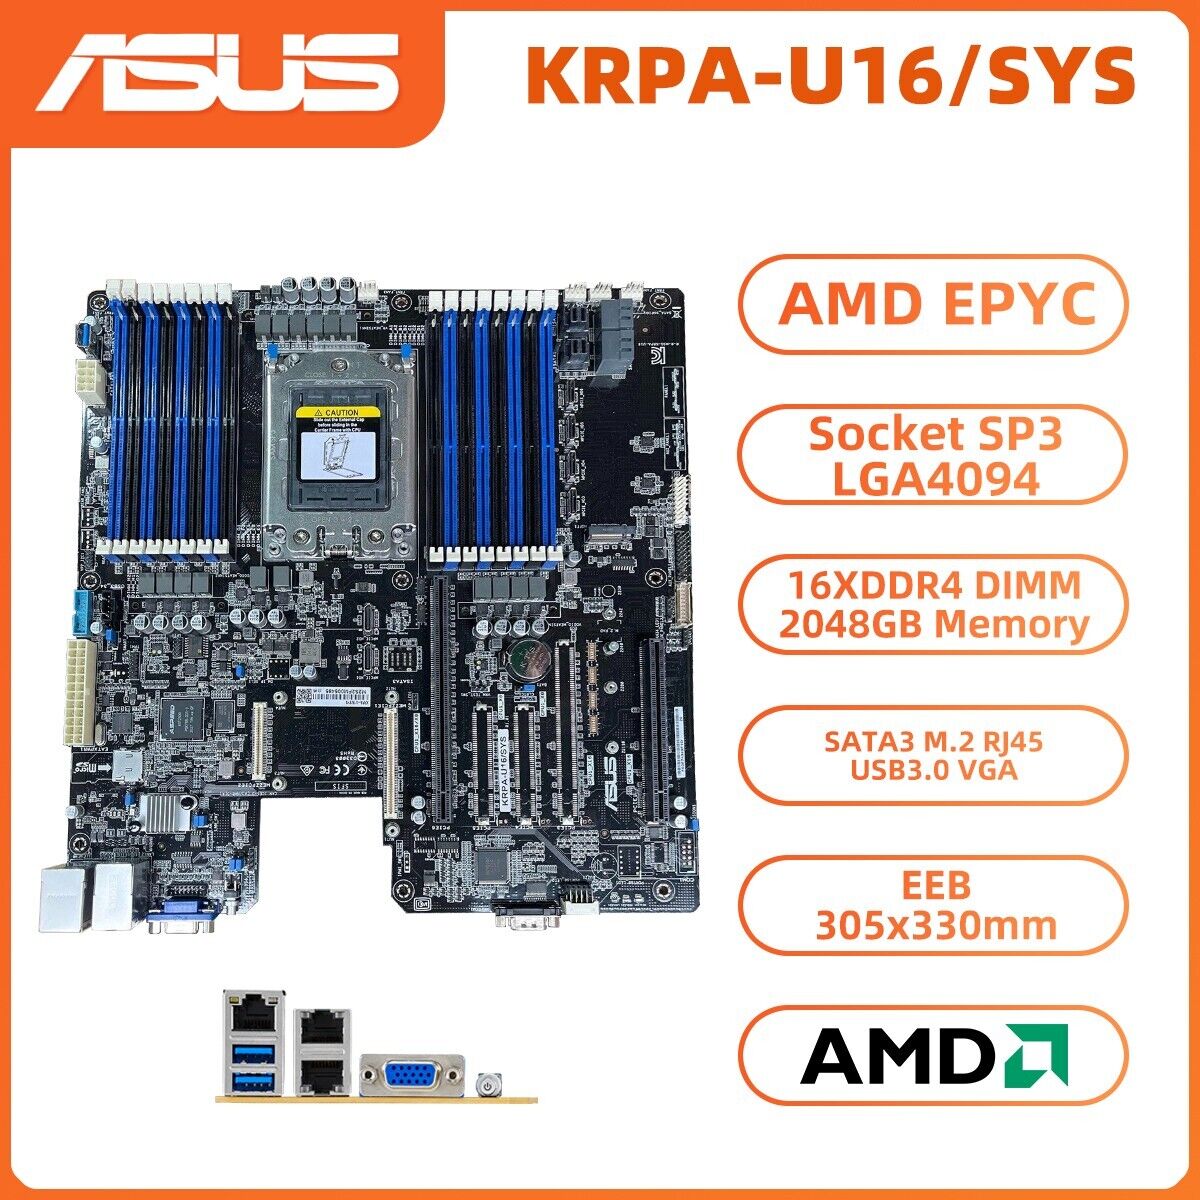 ASUS KRPA-U16/SYS Motherboard EEB AMD EPYC Socket SP3 LGA4094 DDR4 SATA3 VGA